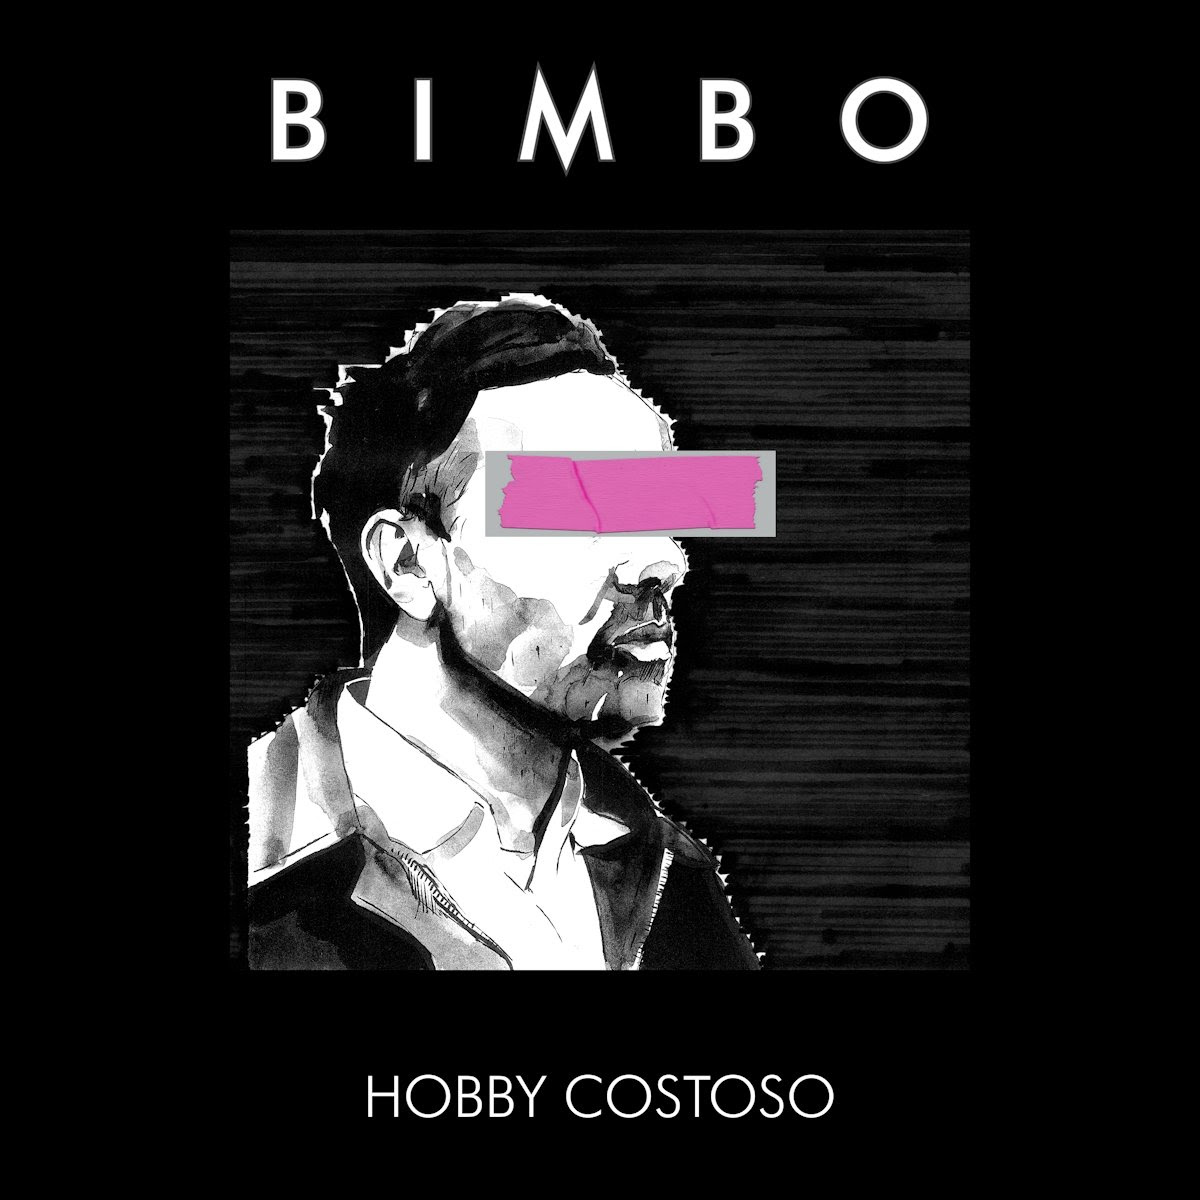 Il12 aprile esce “Hobby costoso”, il nuovo album di Bimbo anticipato dal singolo “Preferisco morire”